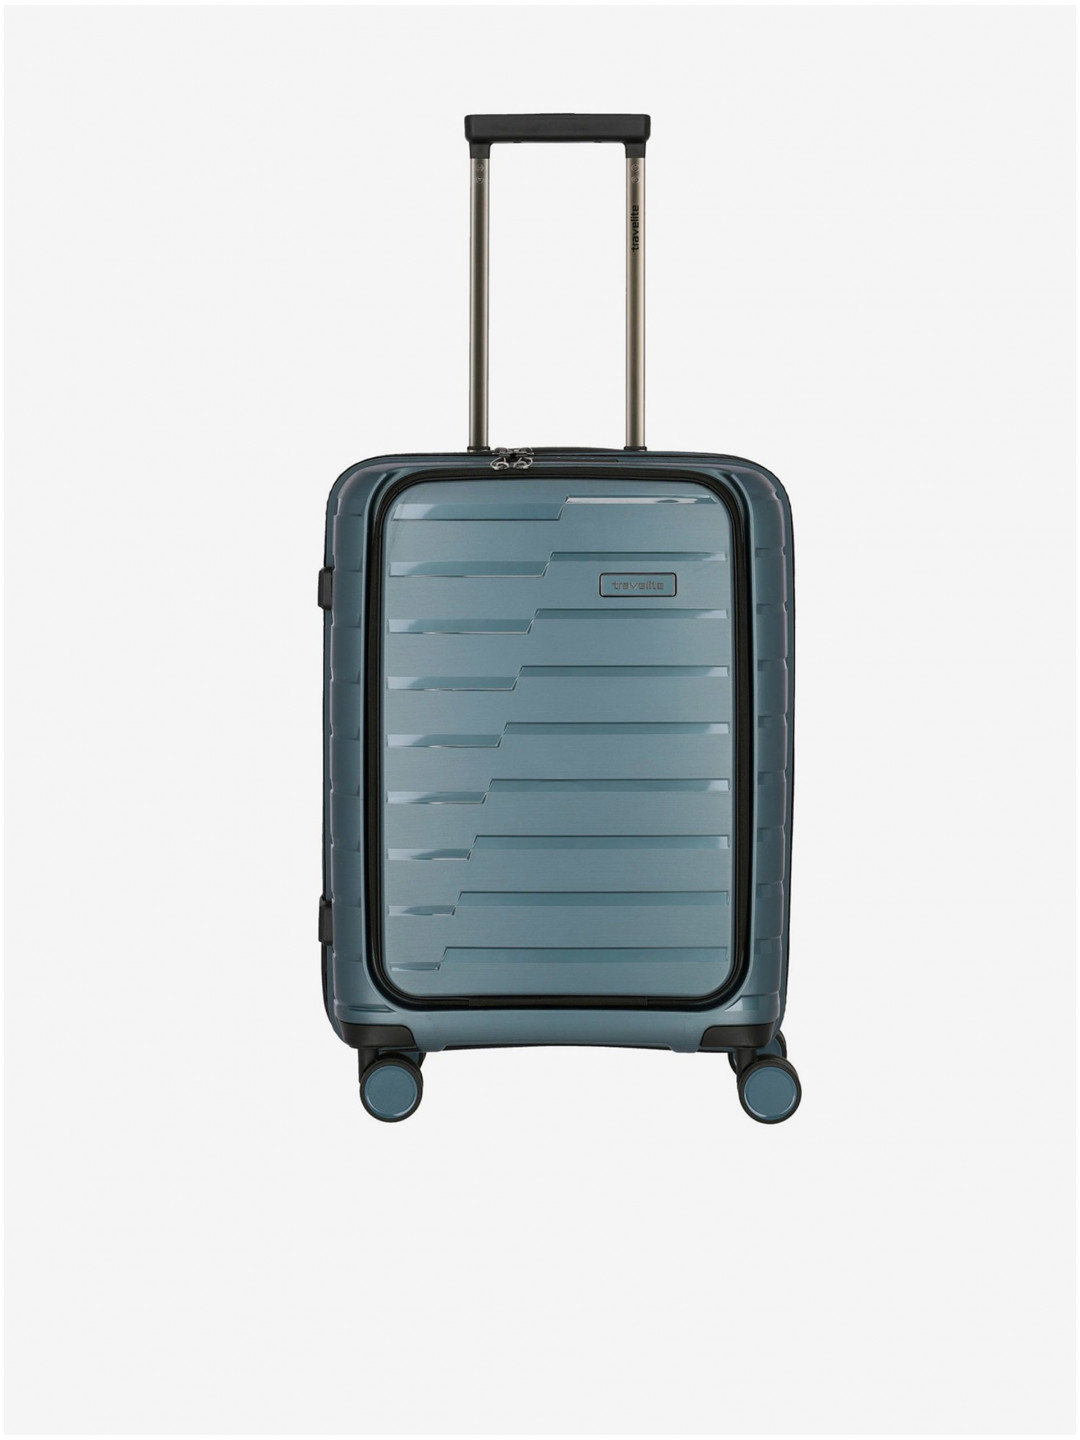 Modrý cestovní kufr Travelite Air Base 4w S Front pocket Ice blue